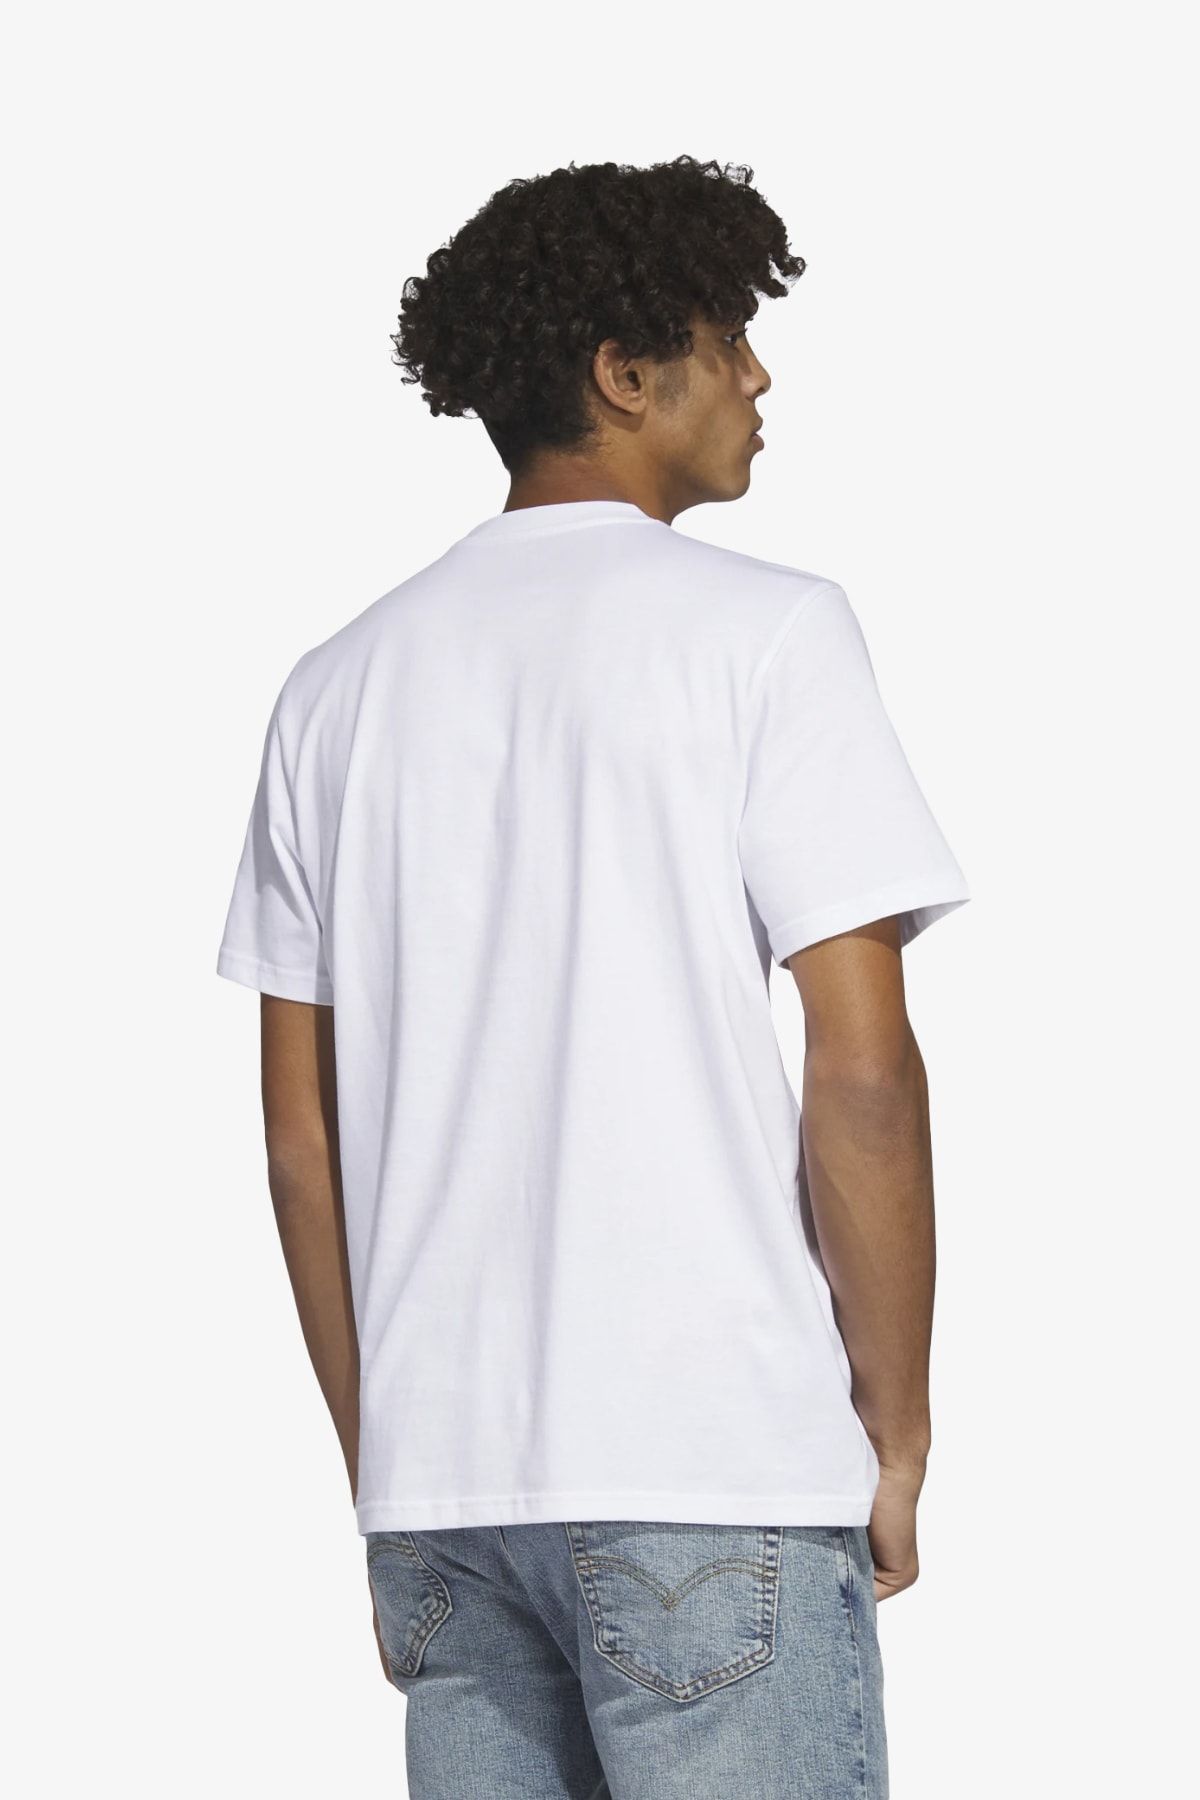 Adidas Men Cotton M DYN G T,Sports T-Shirts,WHITE , 2X-Large : :  Fashion